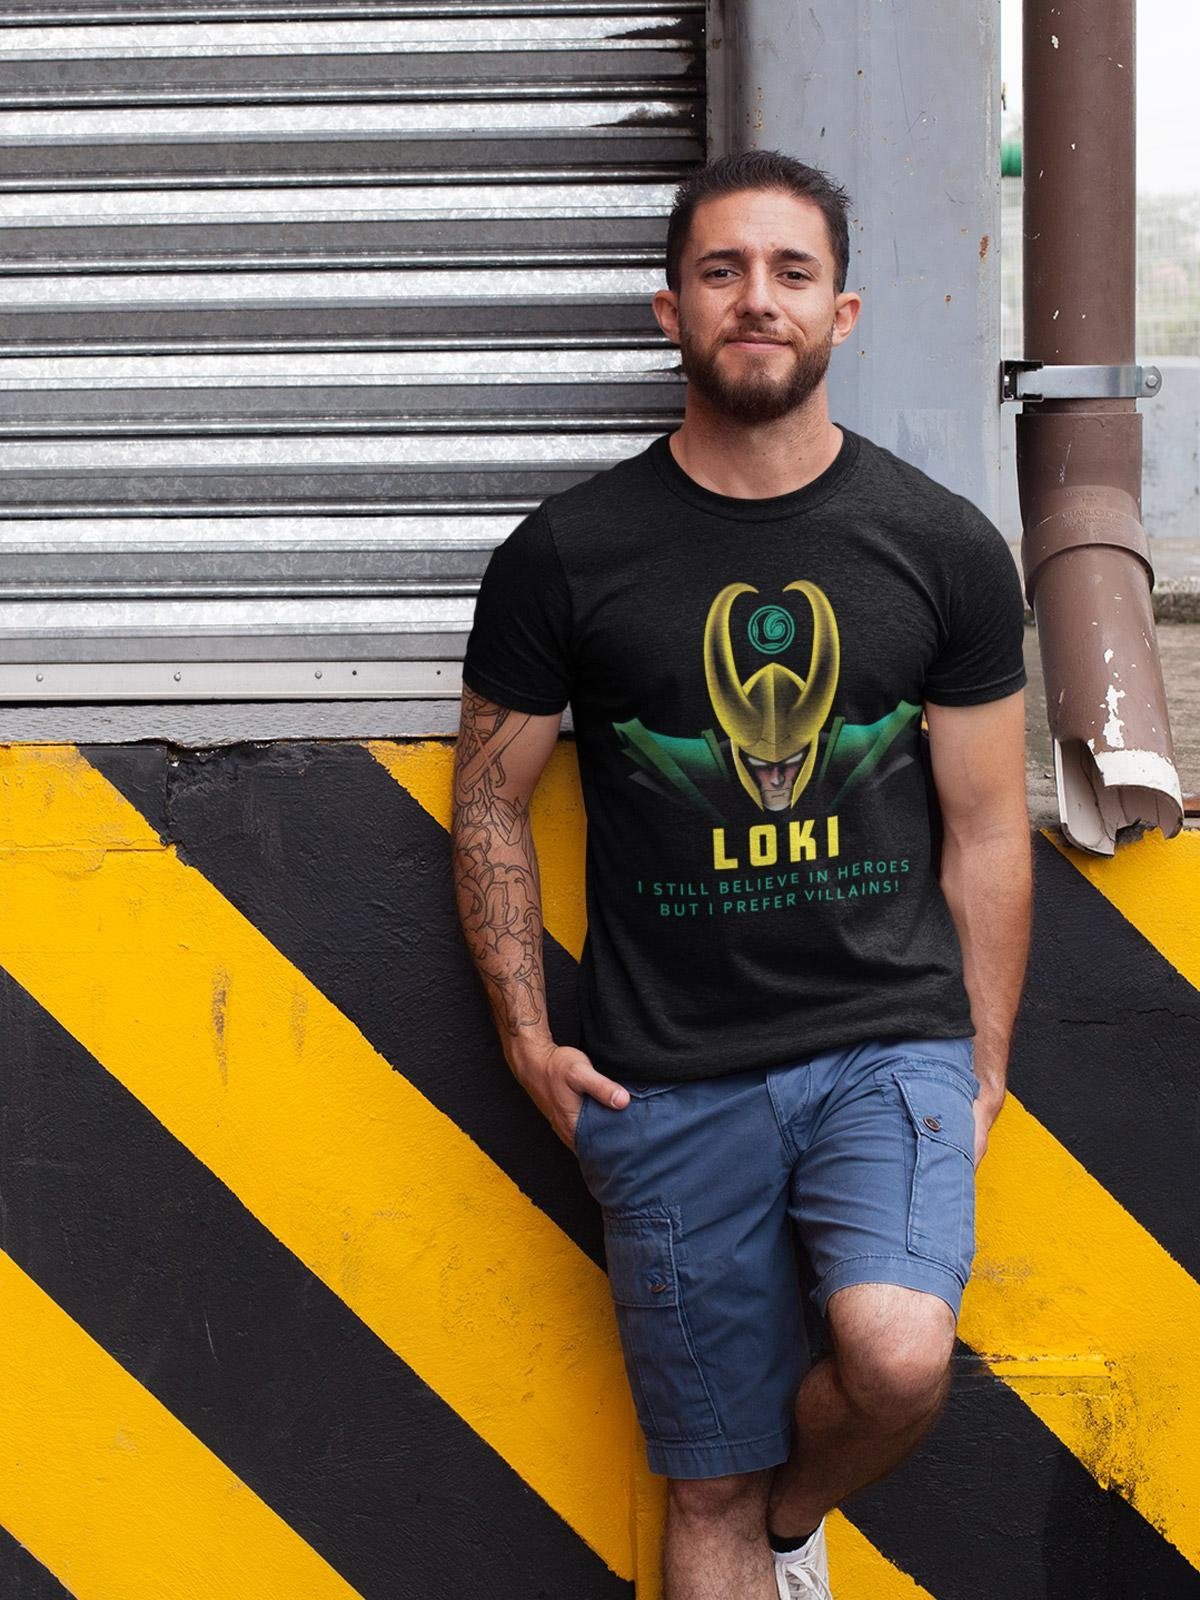 MARVEL Villains Loki T-Shirt